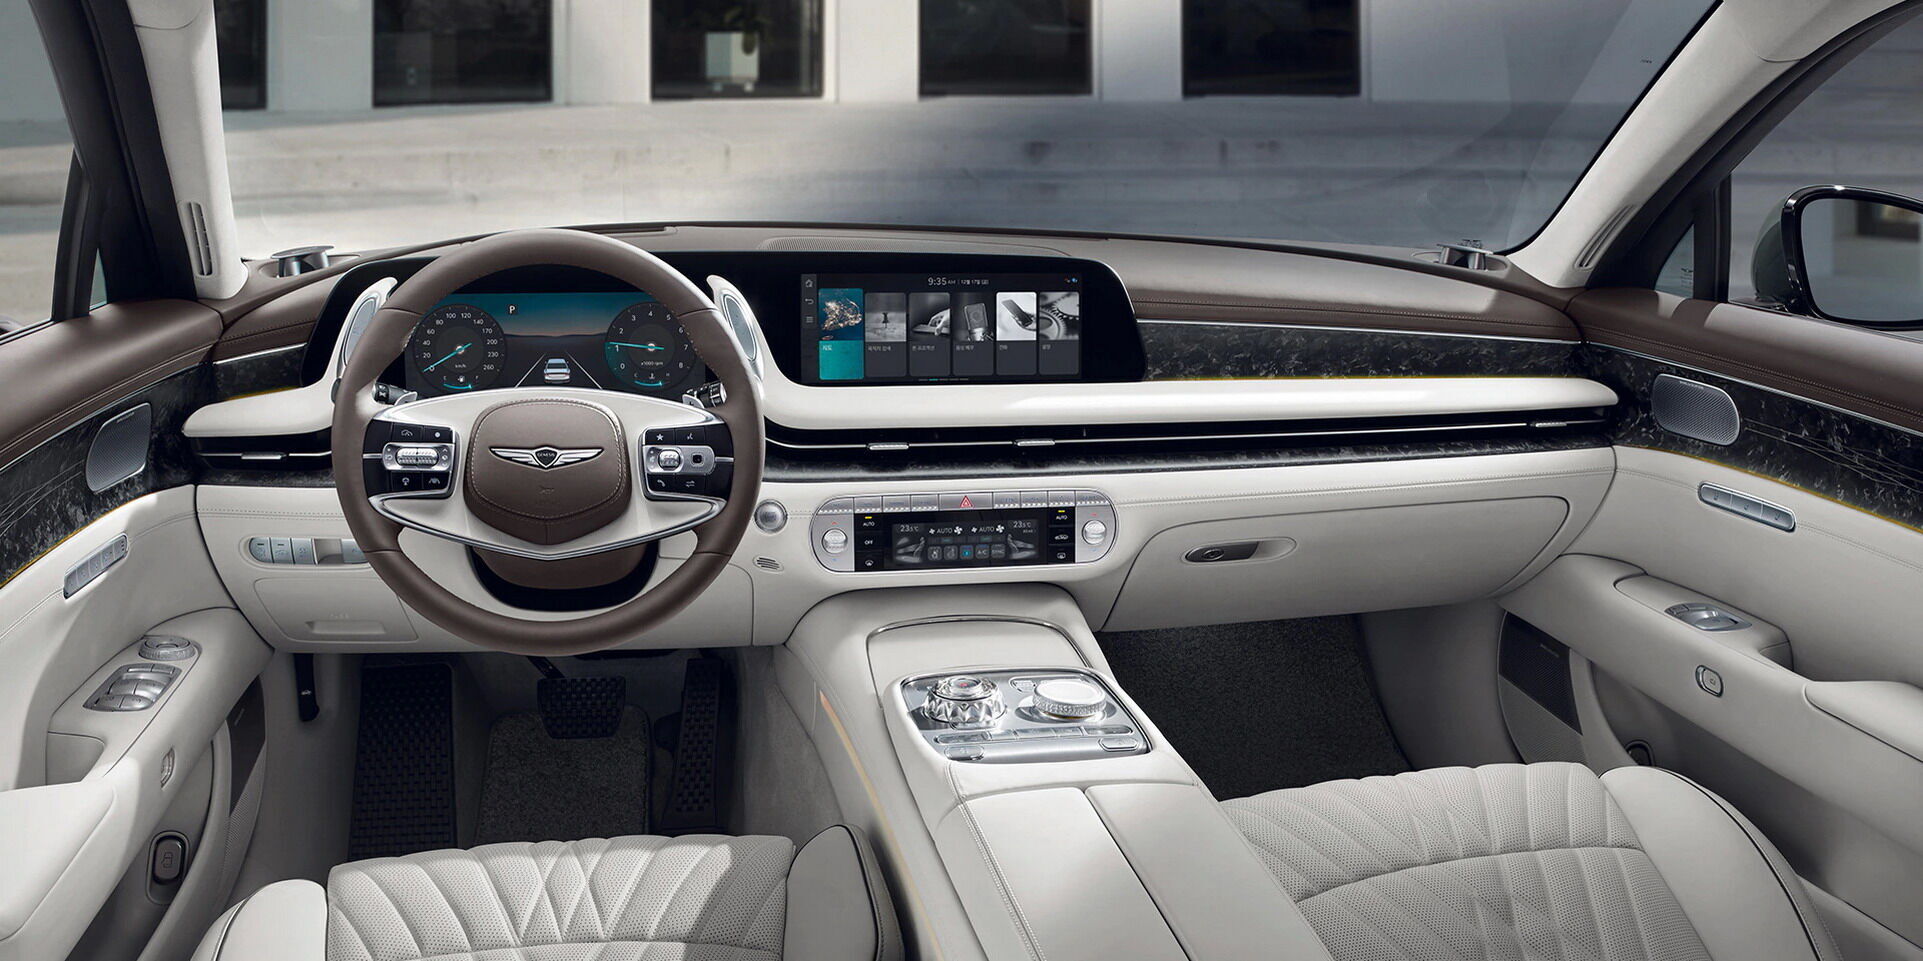 Автомобиль получил роскошный интерьер с большой цифровой панелью, объединяющую 12,3-дюймовые экраны шкалы приборов и инфо-развлекательной системы